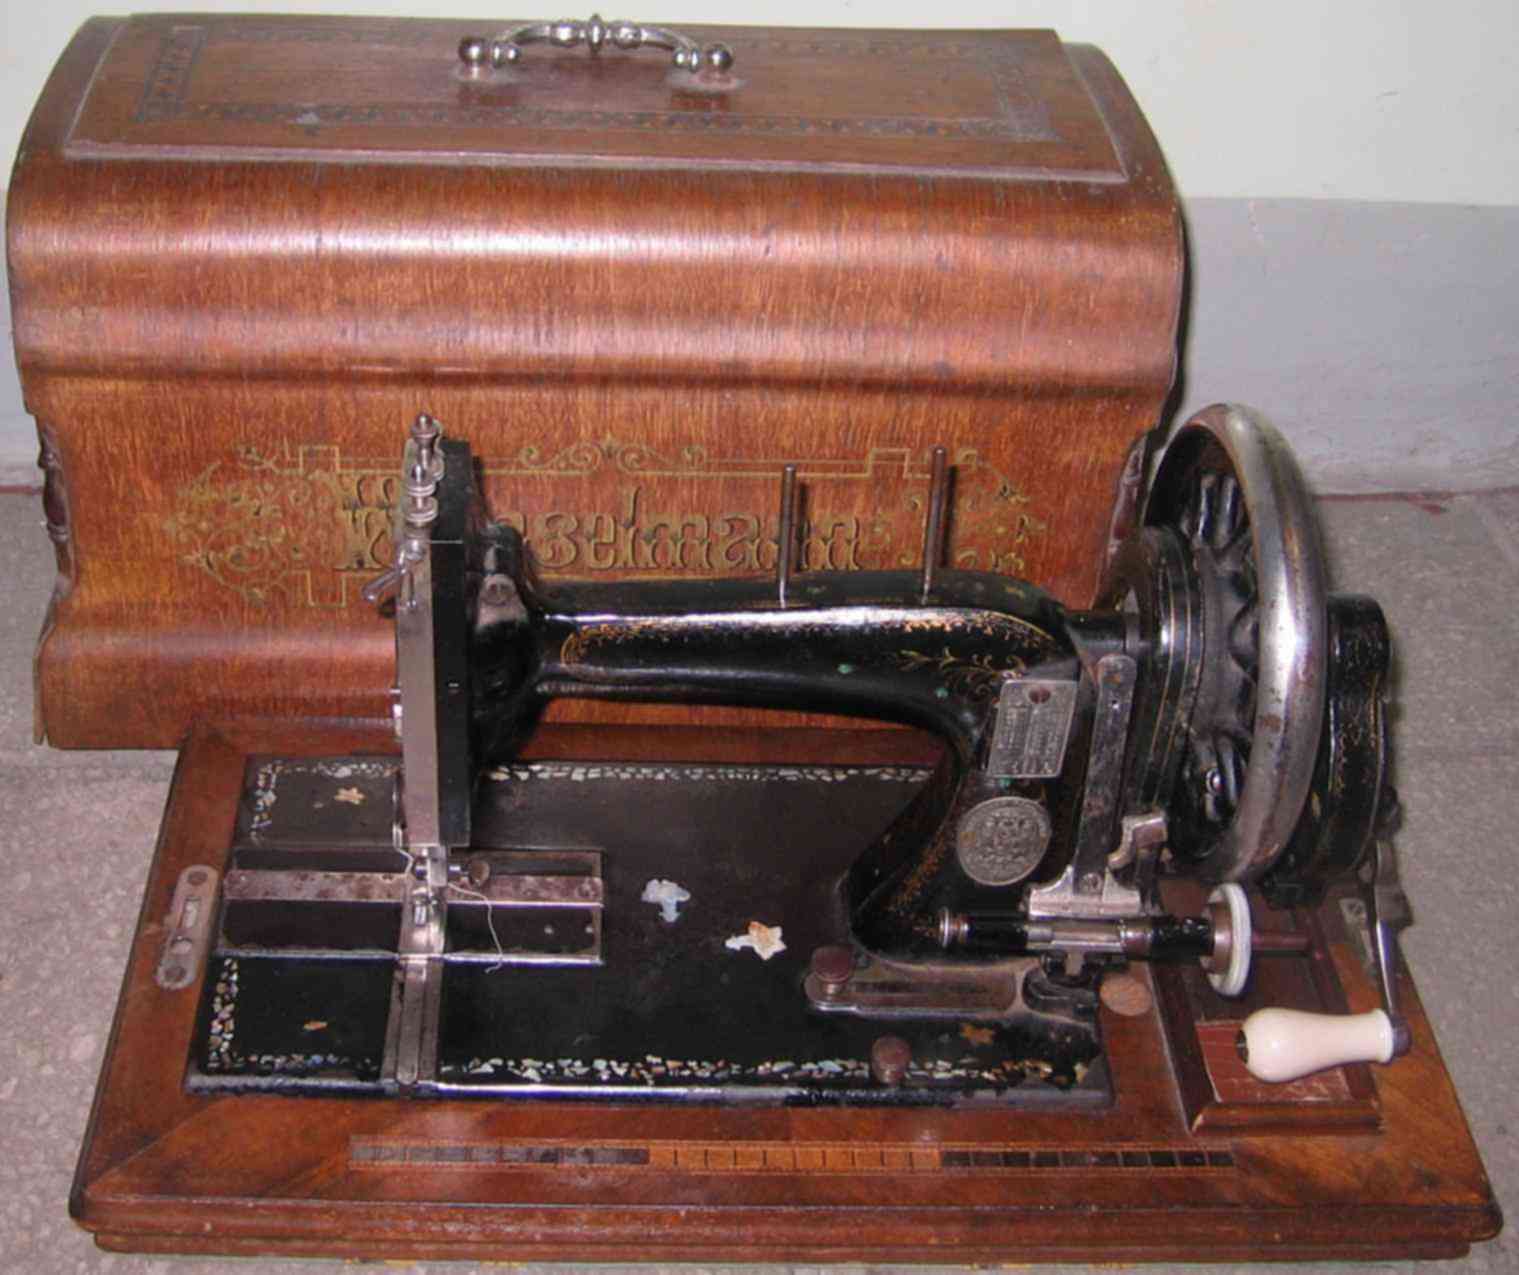 Швейные машины старого образца. Раритетные Швейные машинки. Старинная швейная машинка. Швейная машинка Старая ручная. Швейная машинка старинная ручная.